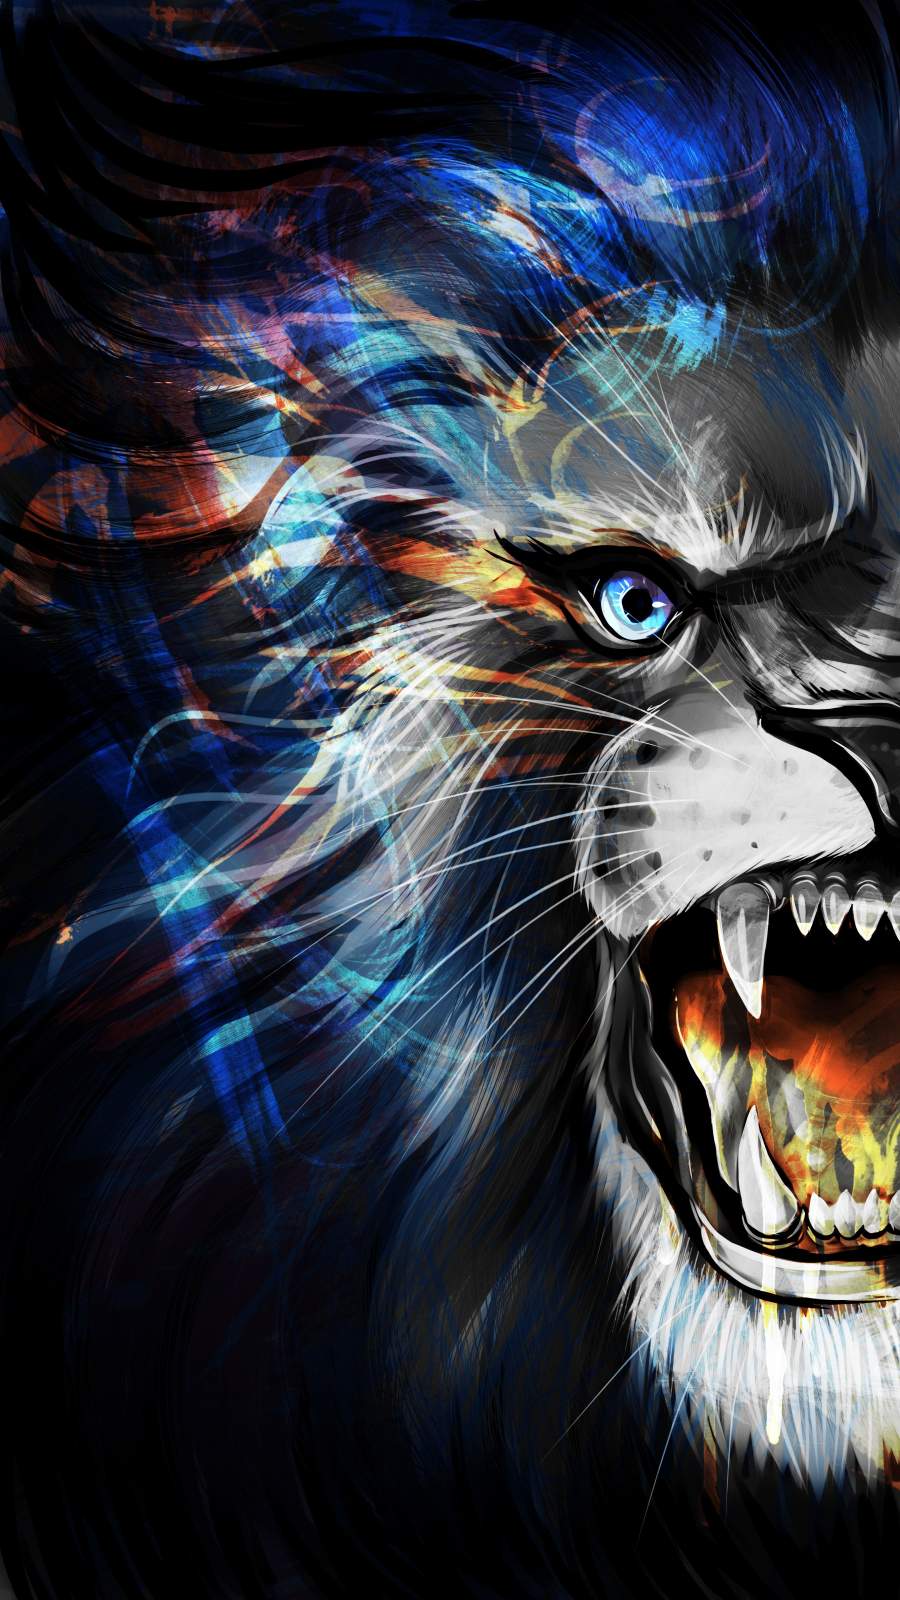 Lion Hd Wallpaper  Roaring Lion On Fire  576x1024 Wallpaper  teahubio